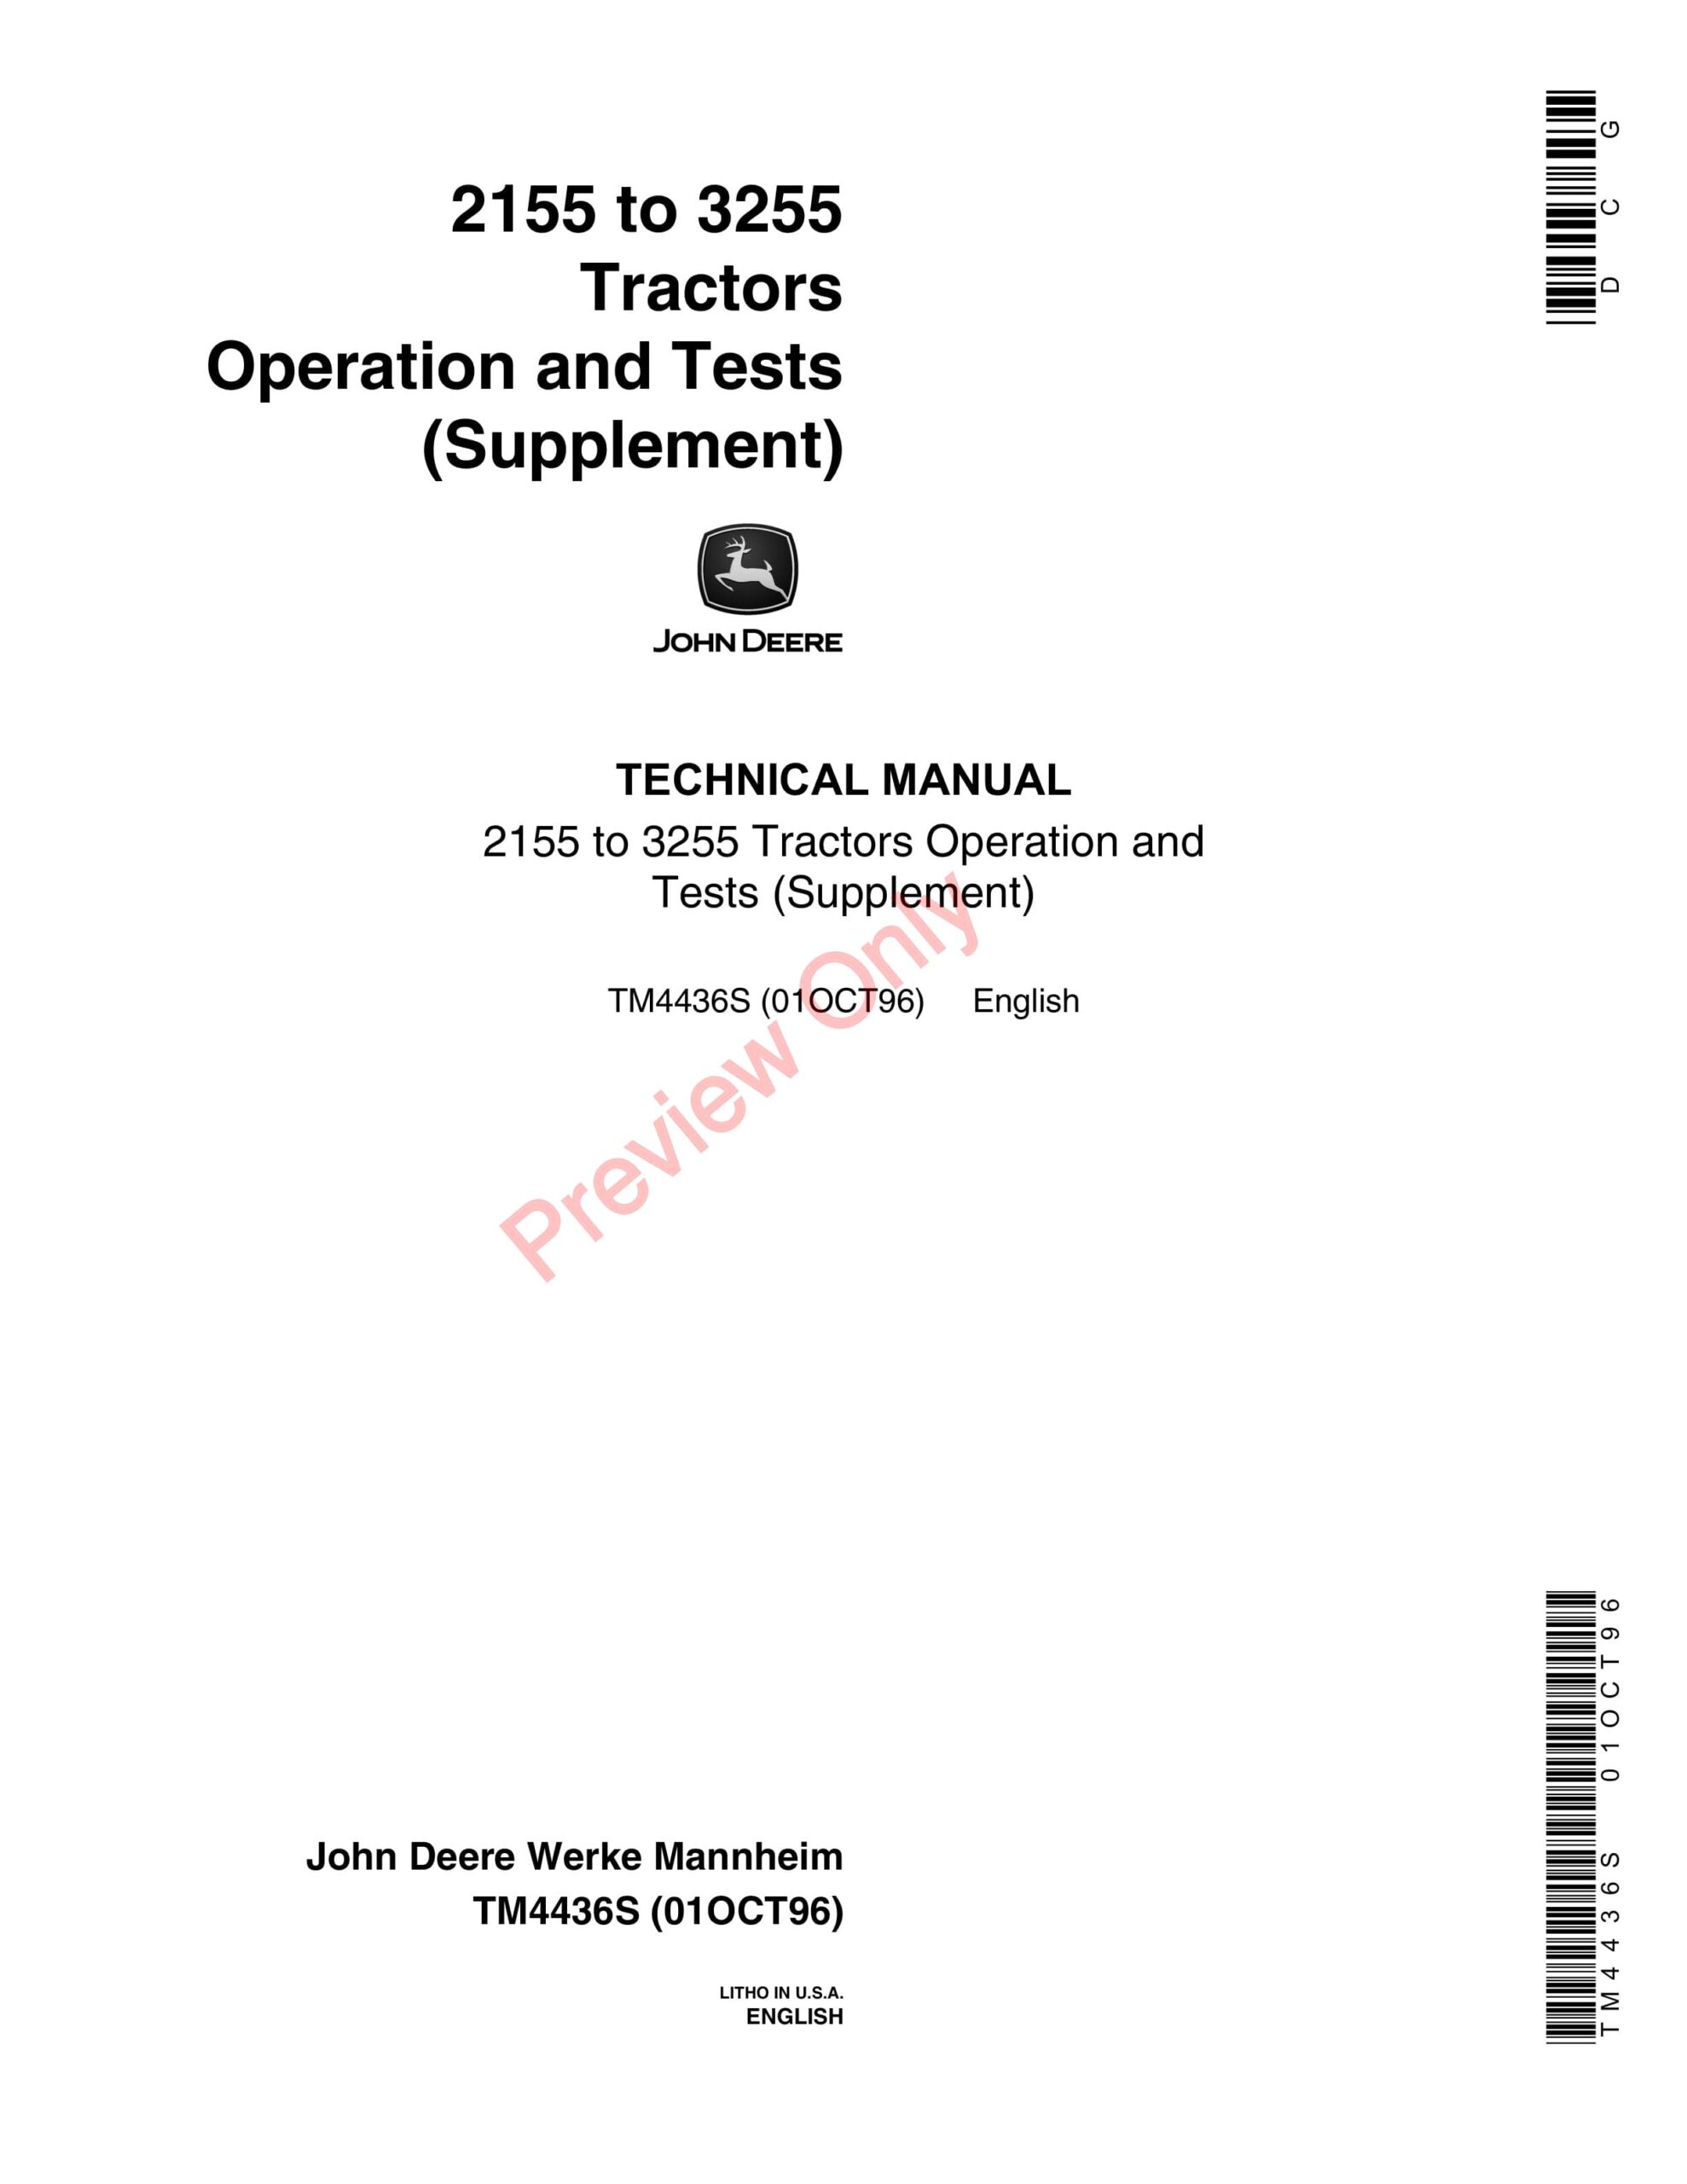 John Deere 2155 to 3255 Tractors Technical Manual TM4436S 01OCT96-1